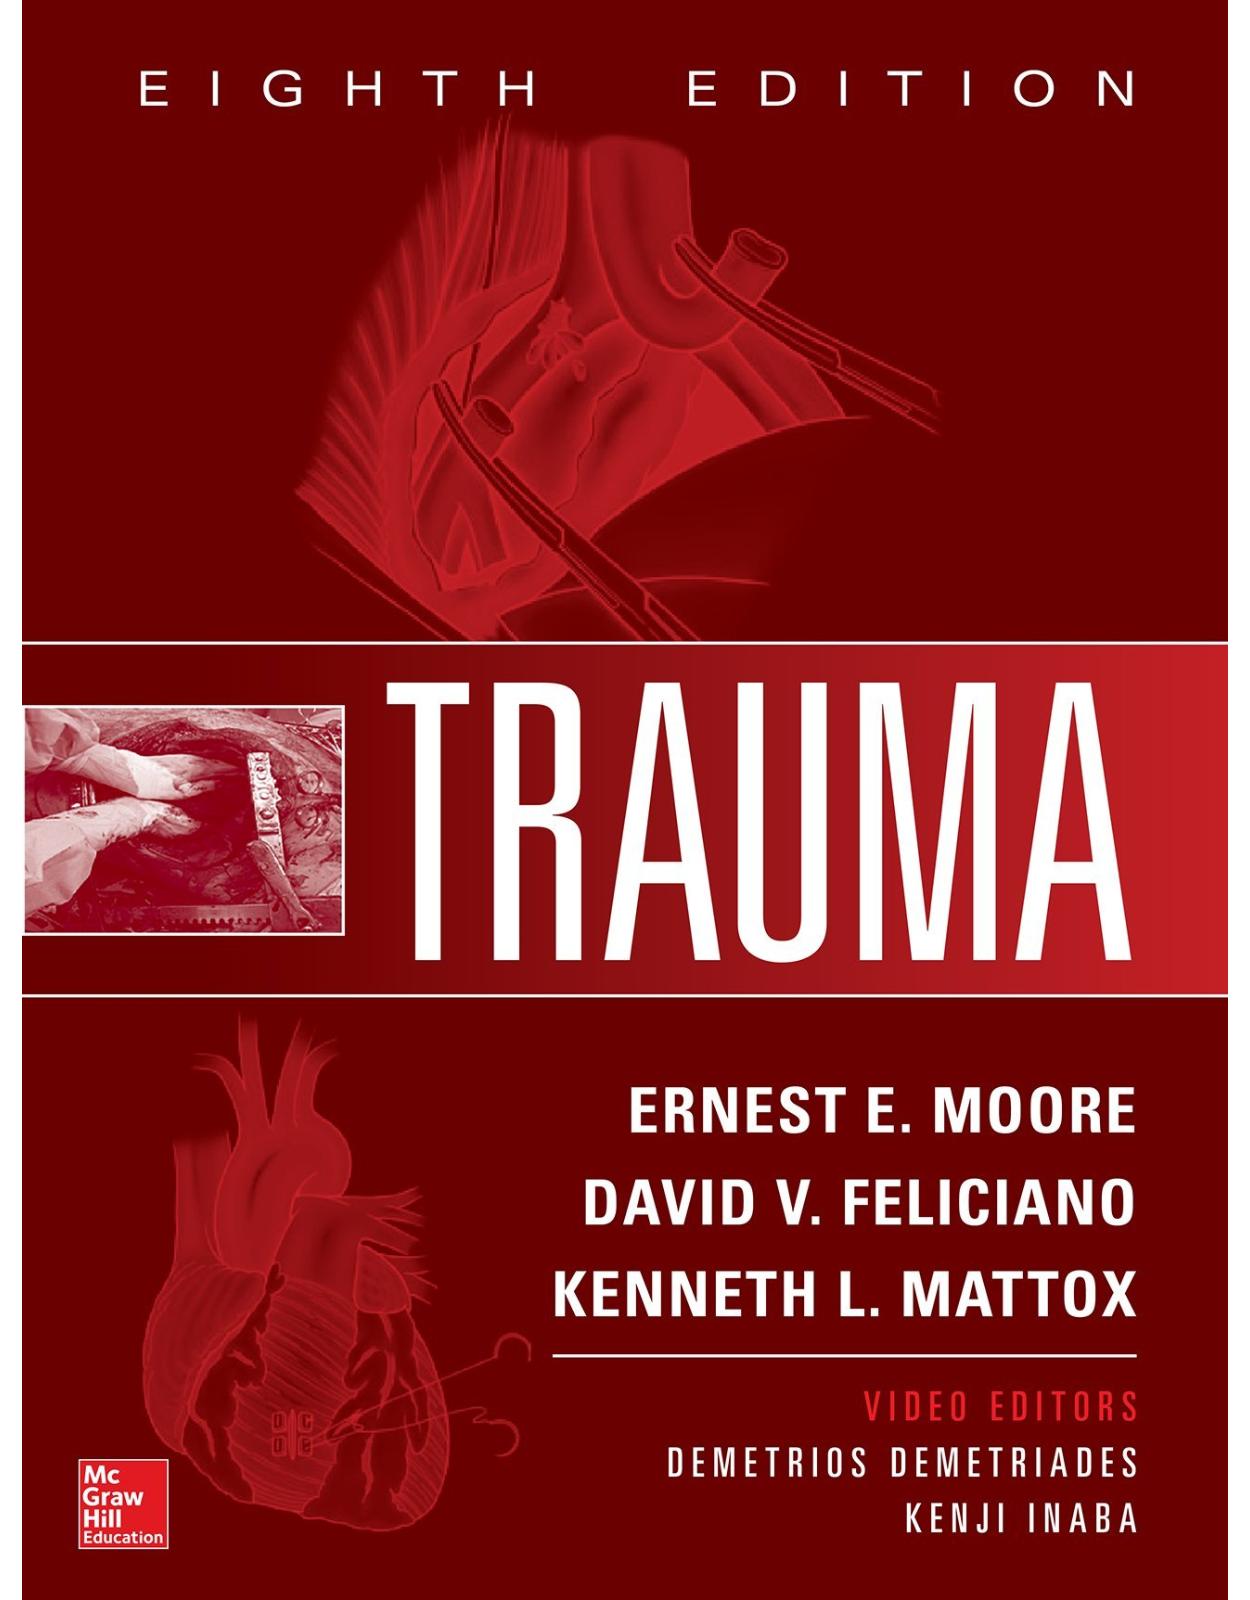 Trauma, Eighth Edition